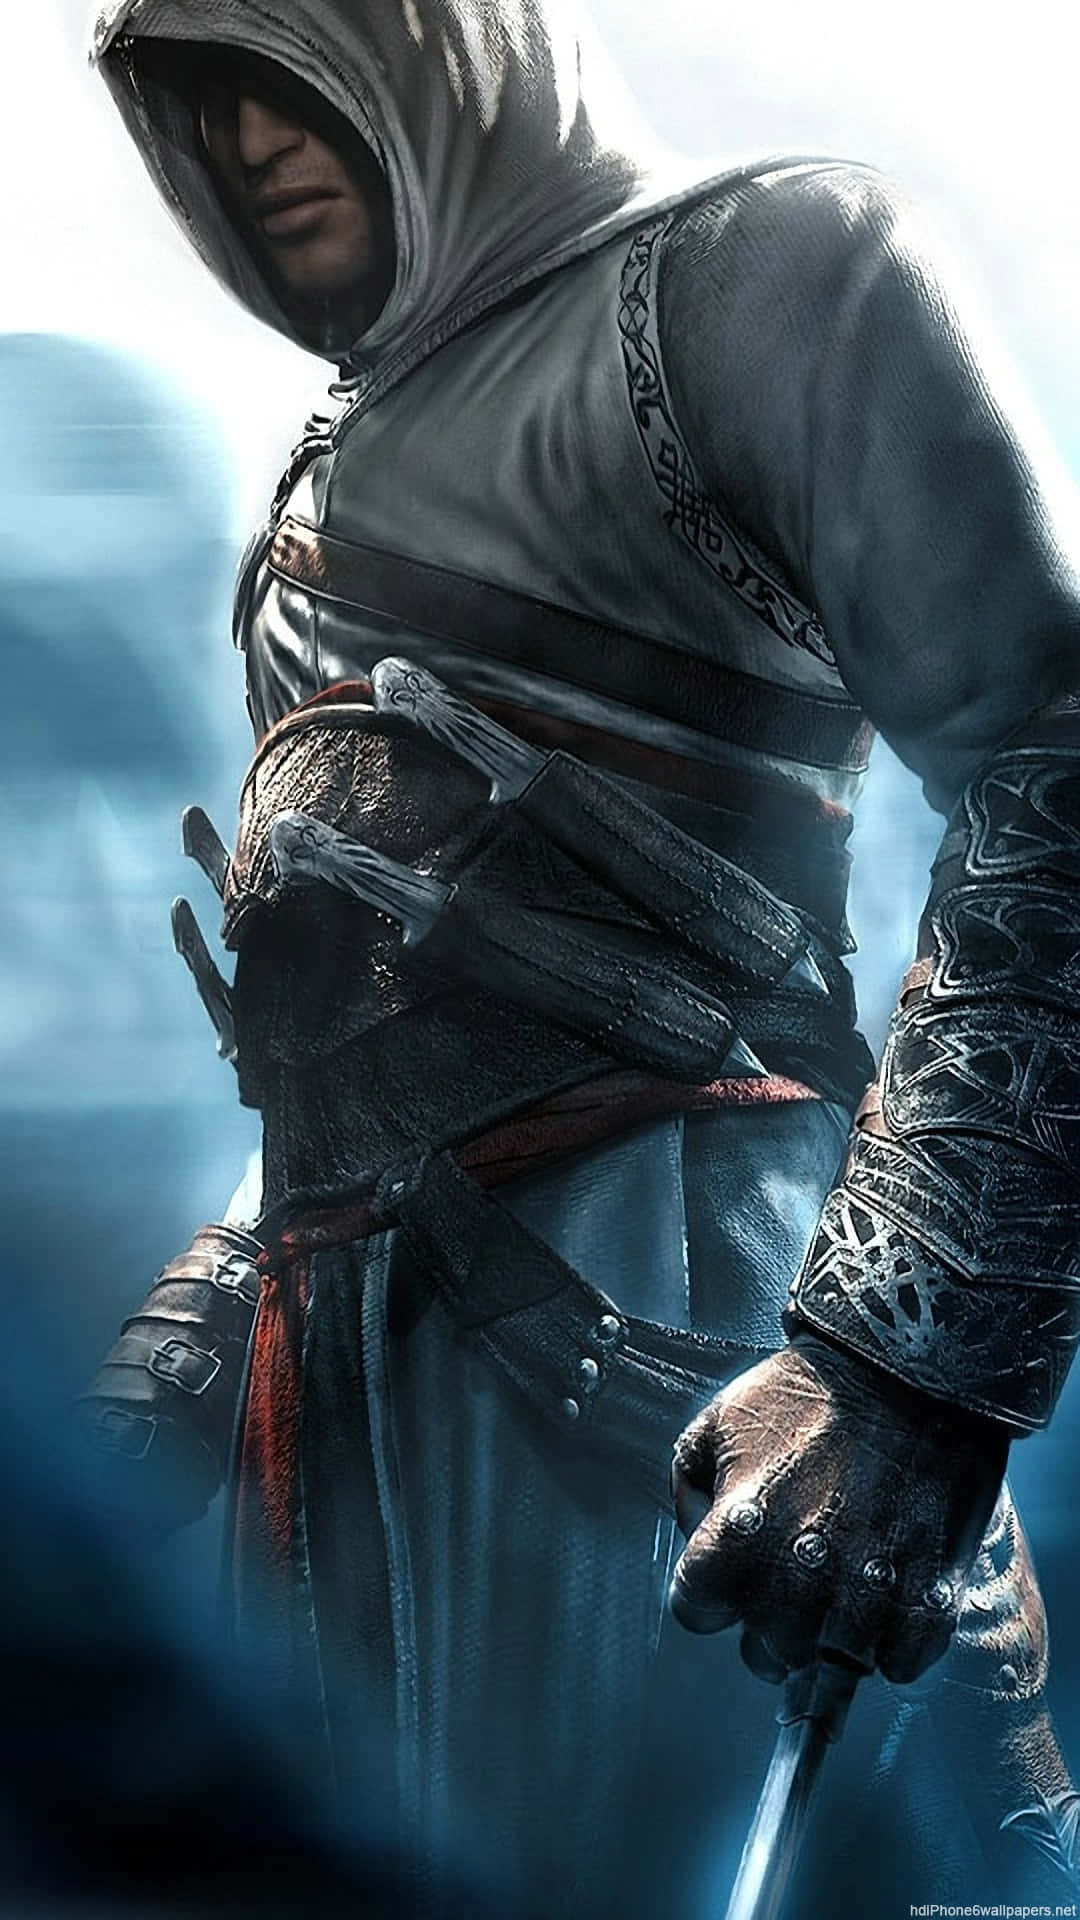 Assassin's Creed Valhalla Wallpaper 4K, Eivor, Viking raider